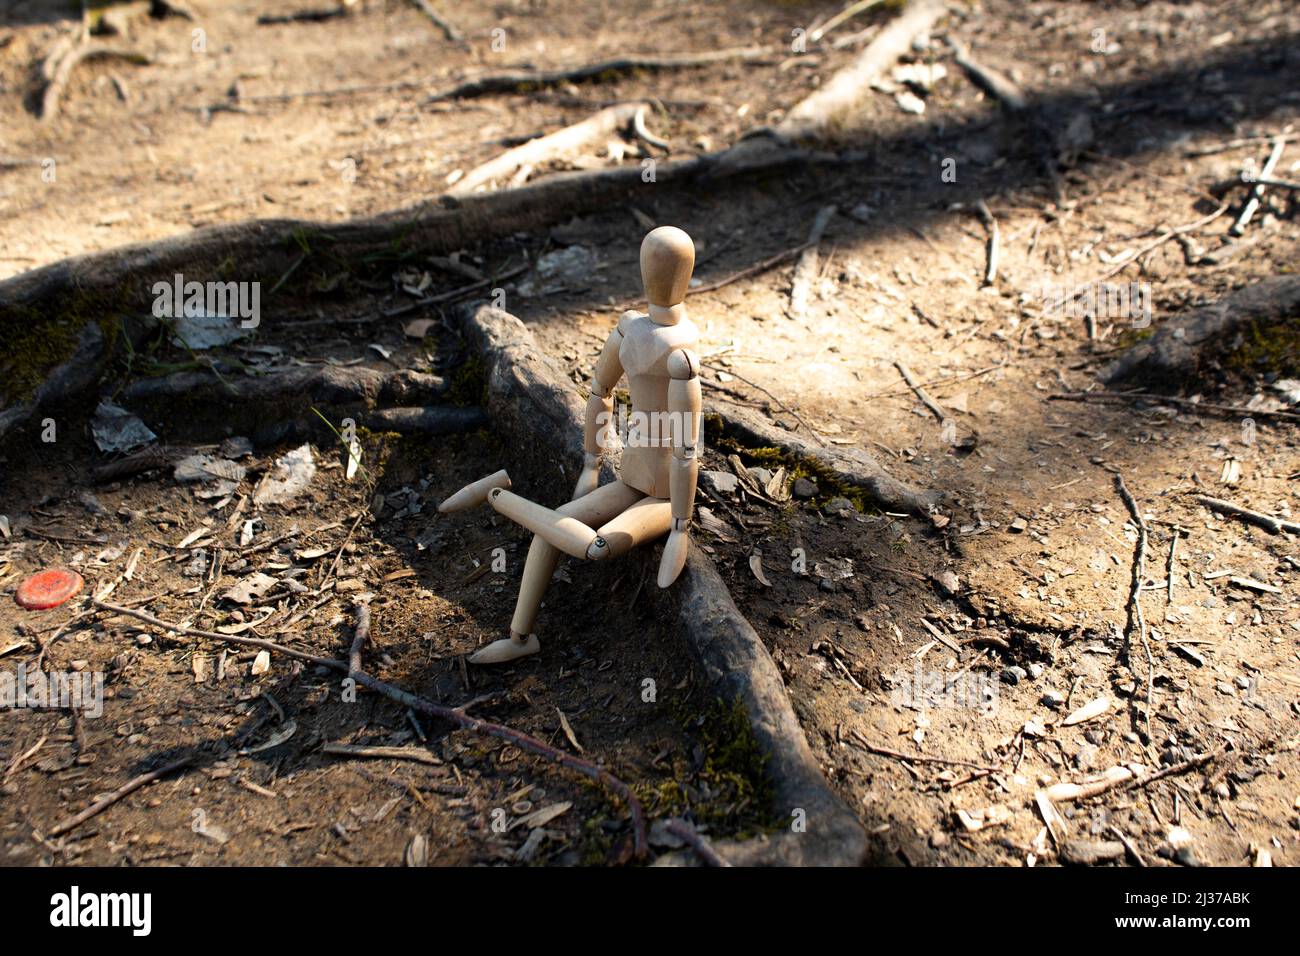 Le mannequin en bois s'assoit sur des racines d'arbres qui regardent la forêt, les pattes de marionnettes en bois croisées, vue latérale, concept d'automne, arrière-plan de la forêt Banque D'Images